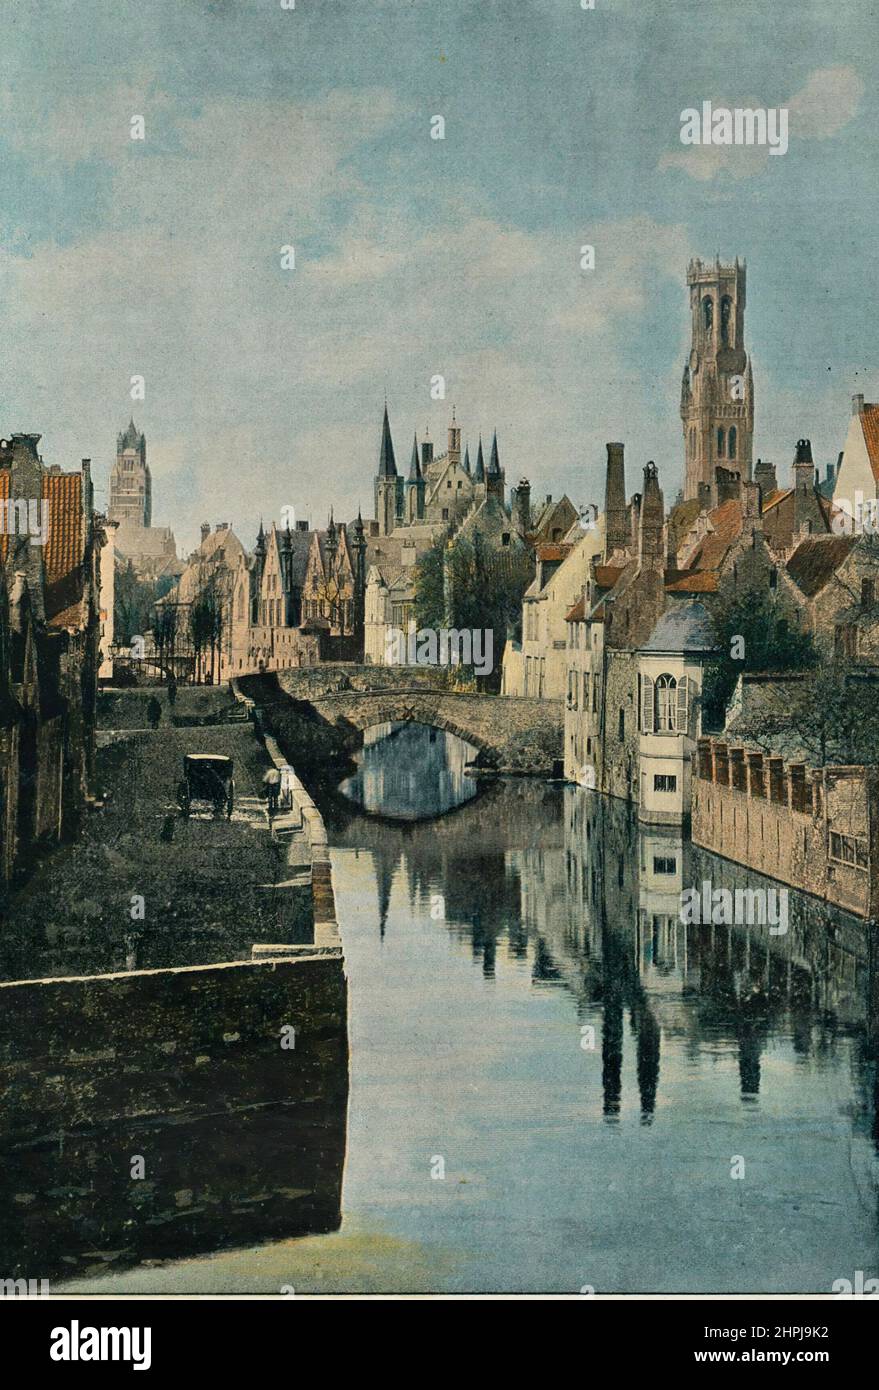 BRUGES. LE CANAL Autour Du Monde En Belgique 1895 - 1900  (4)  - 19 th century french colored photography print Stock Photo